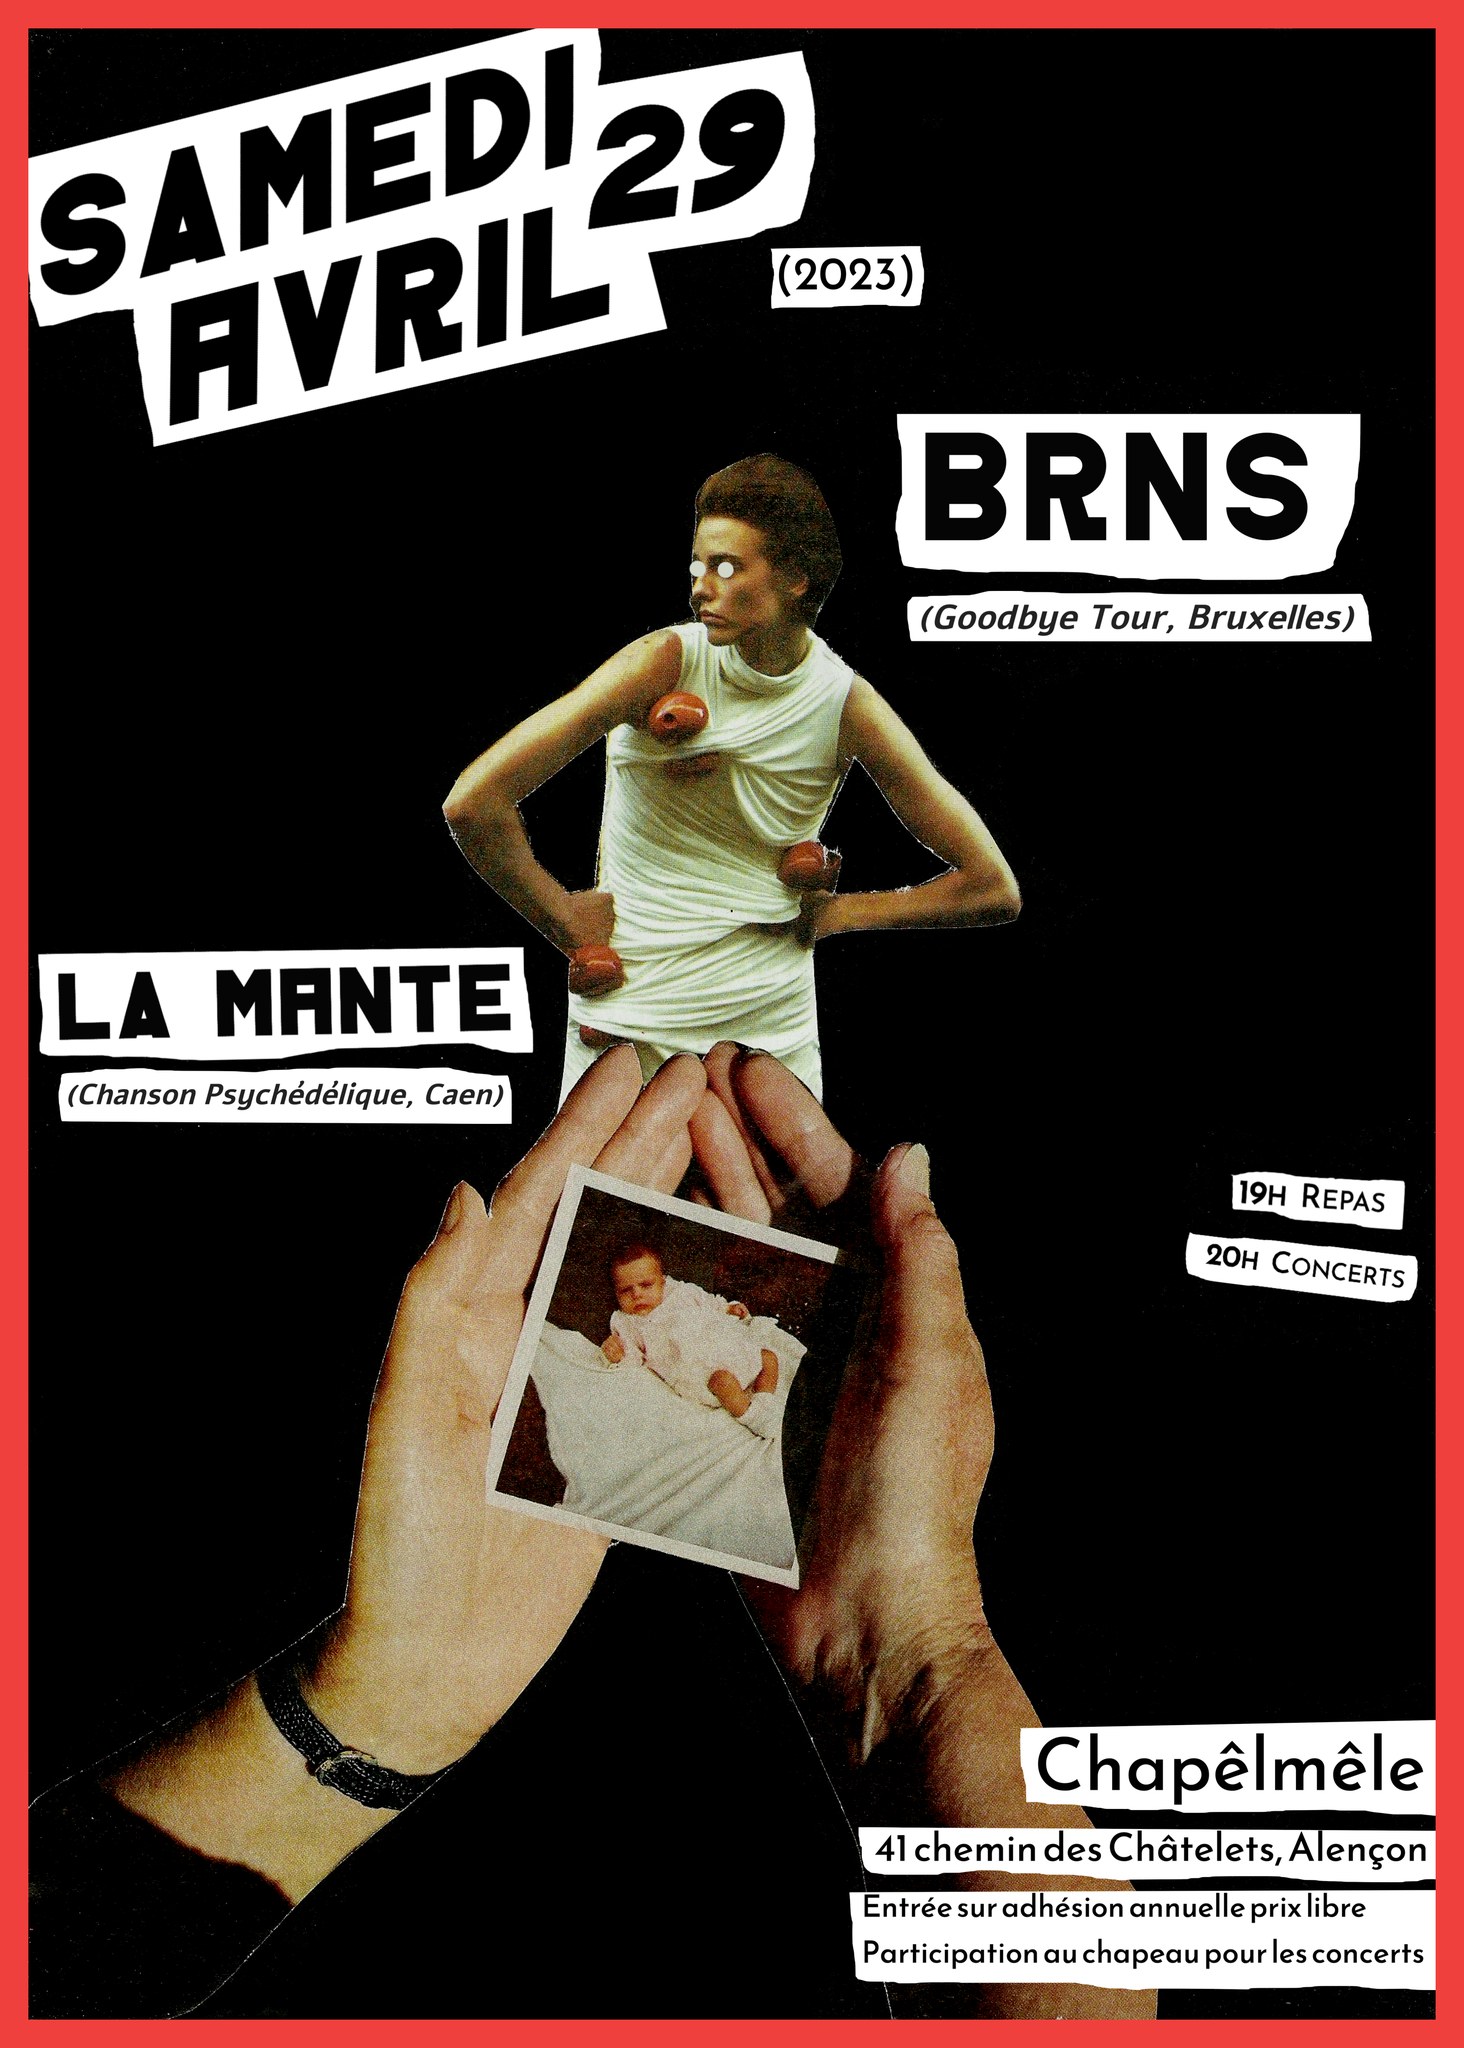 image from [Concert]  BRNS (GOODBYE TOUR, Bruxelles) + La Mante (Chanson Psychédélique, Caen)